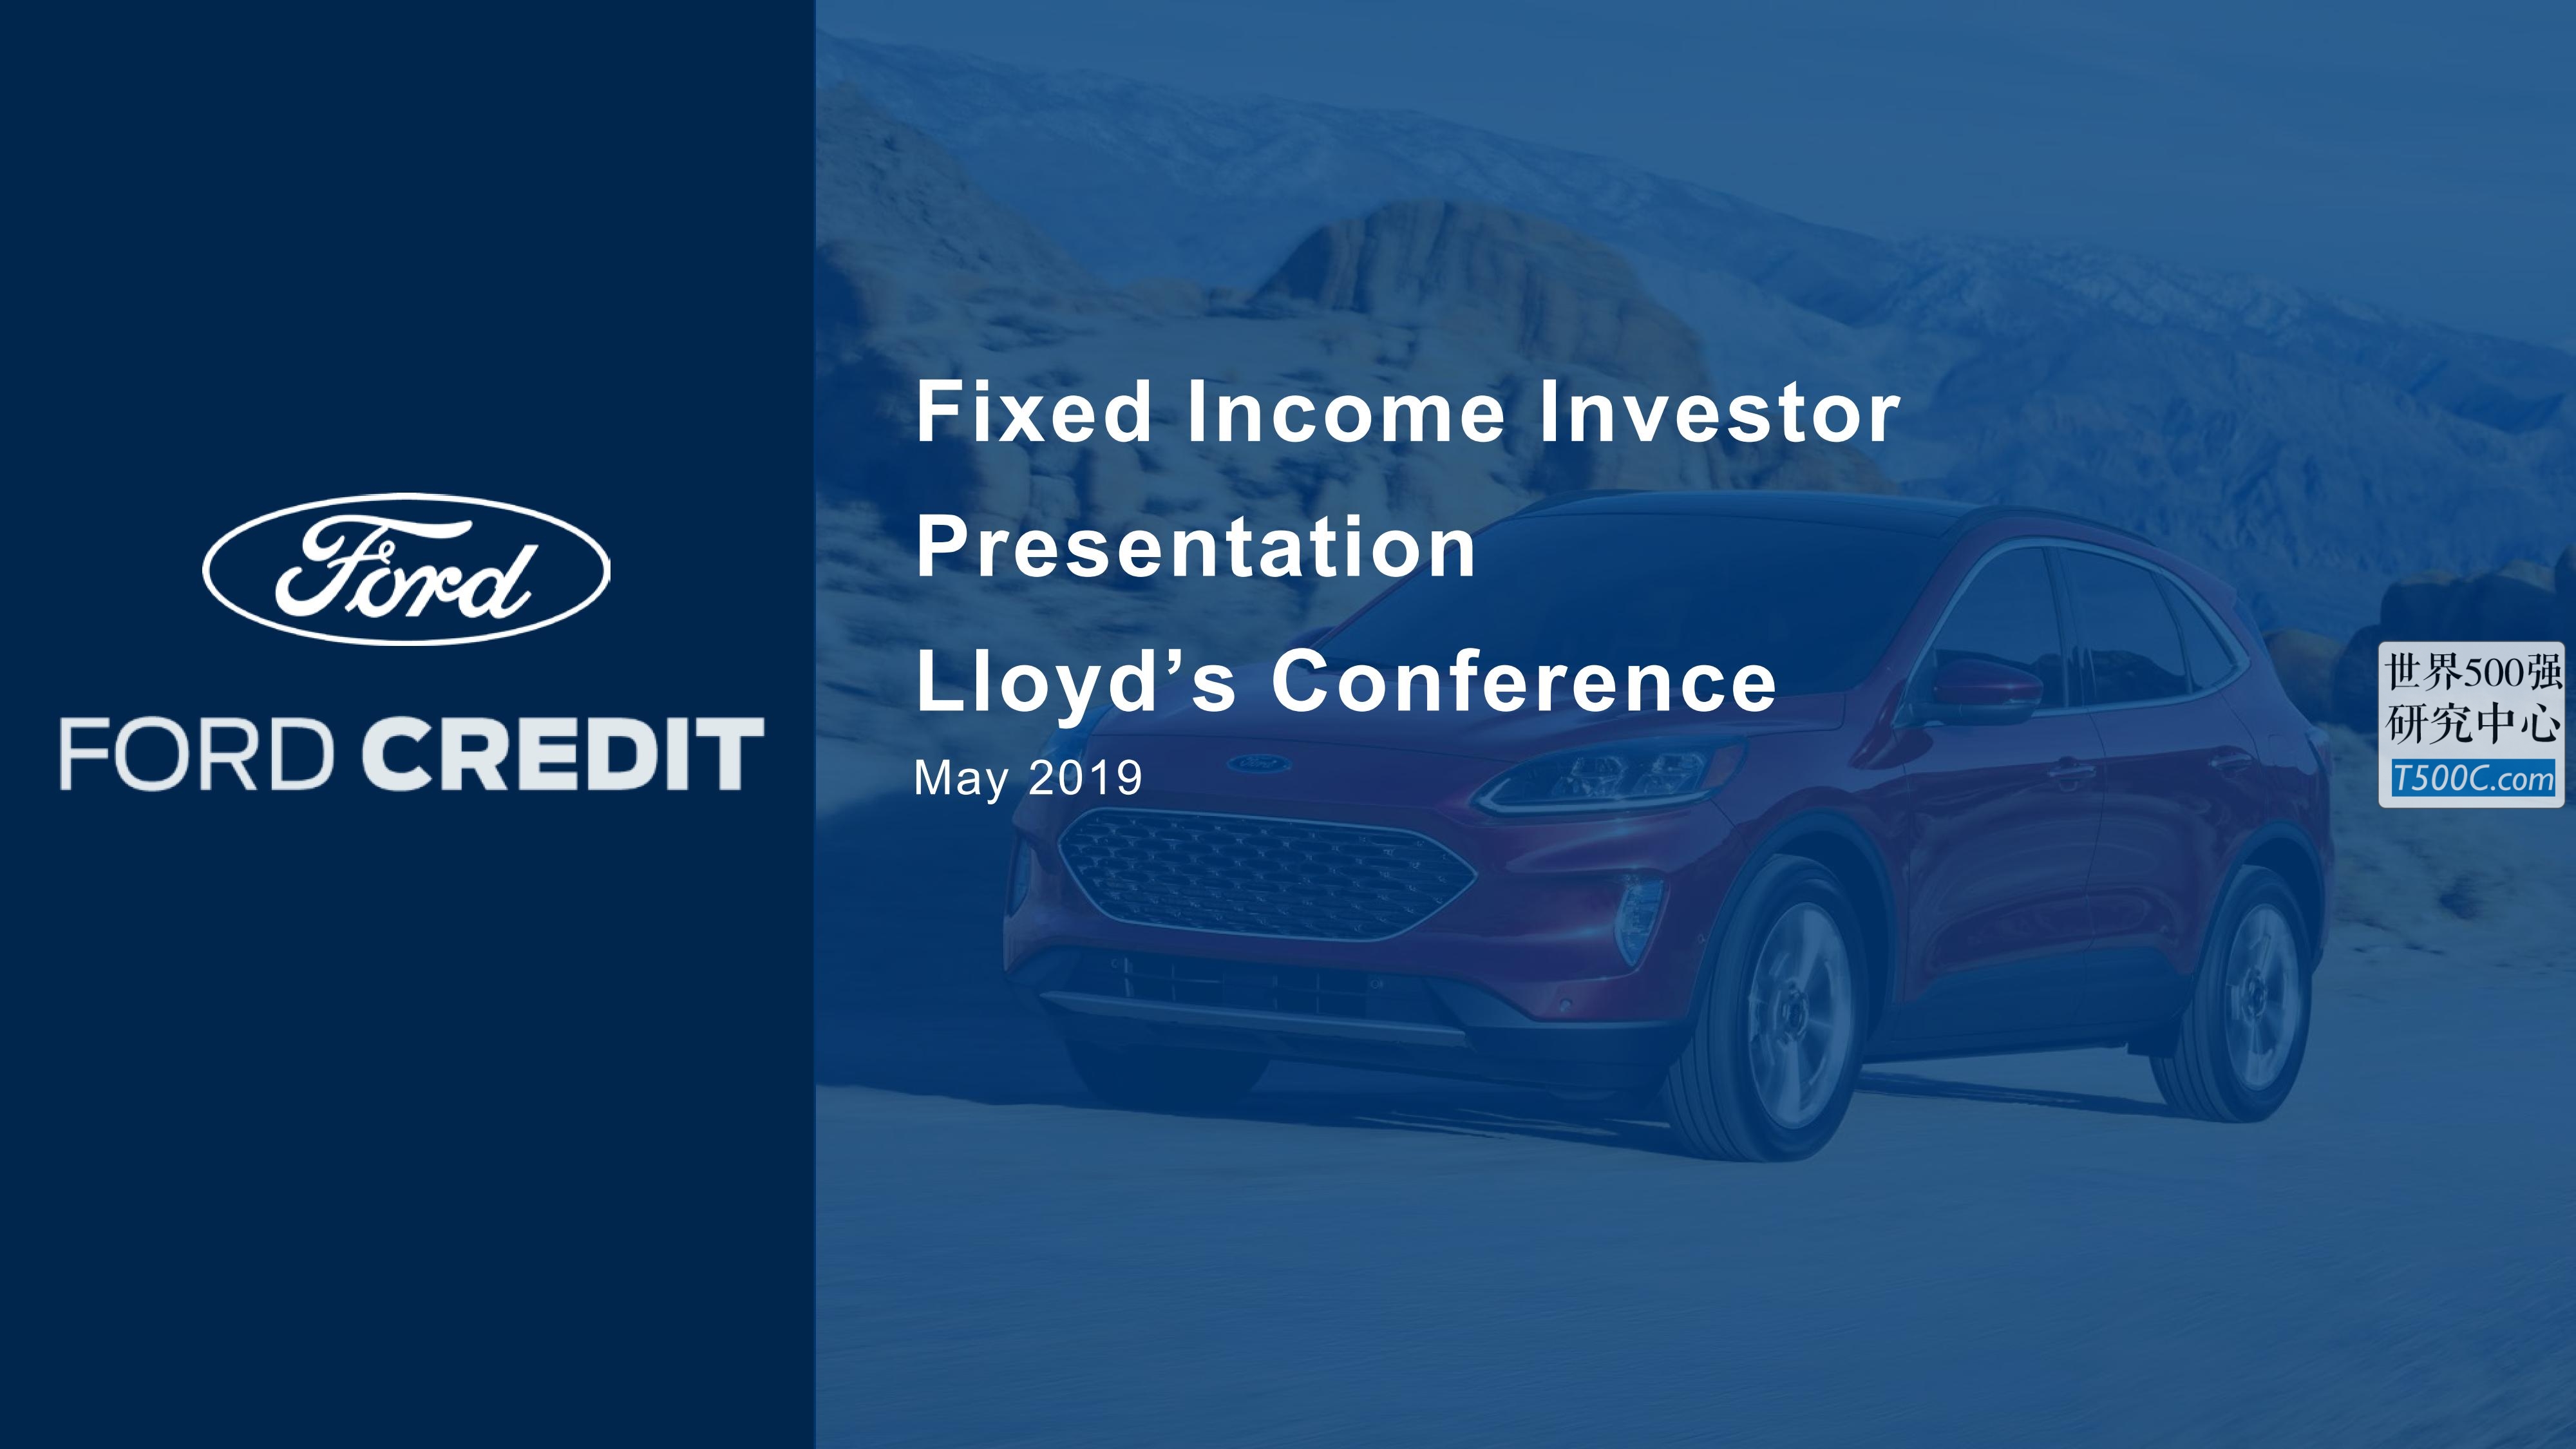 福特汽车Ford_PPT样式_2019_T500C.com_Lloyd's-Conference-May.pdf